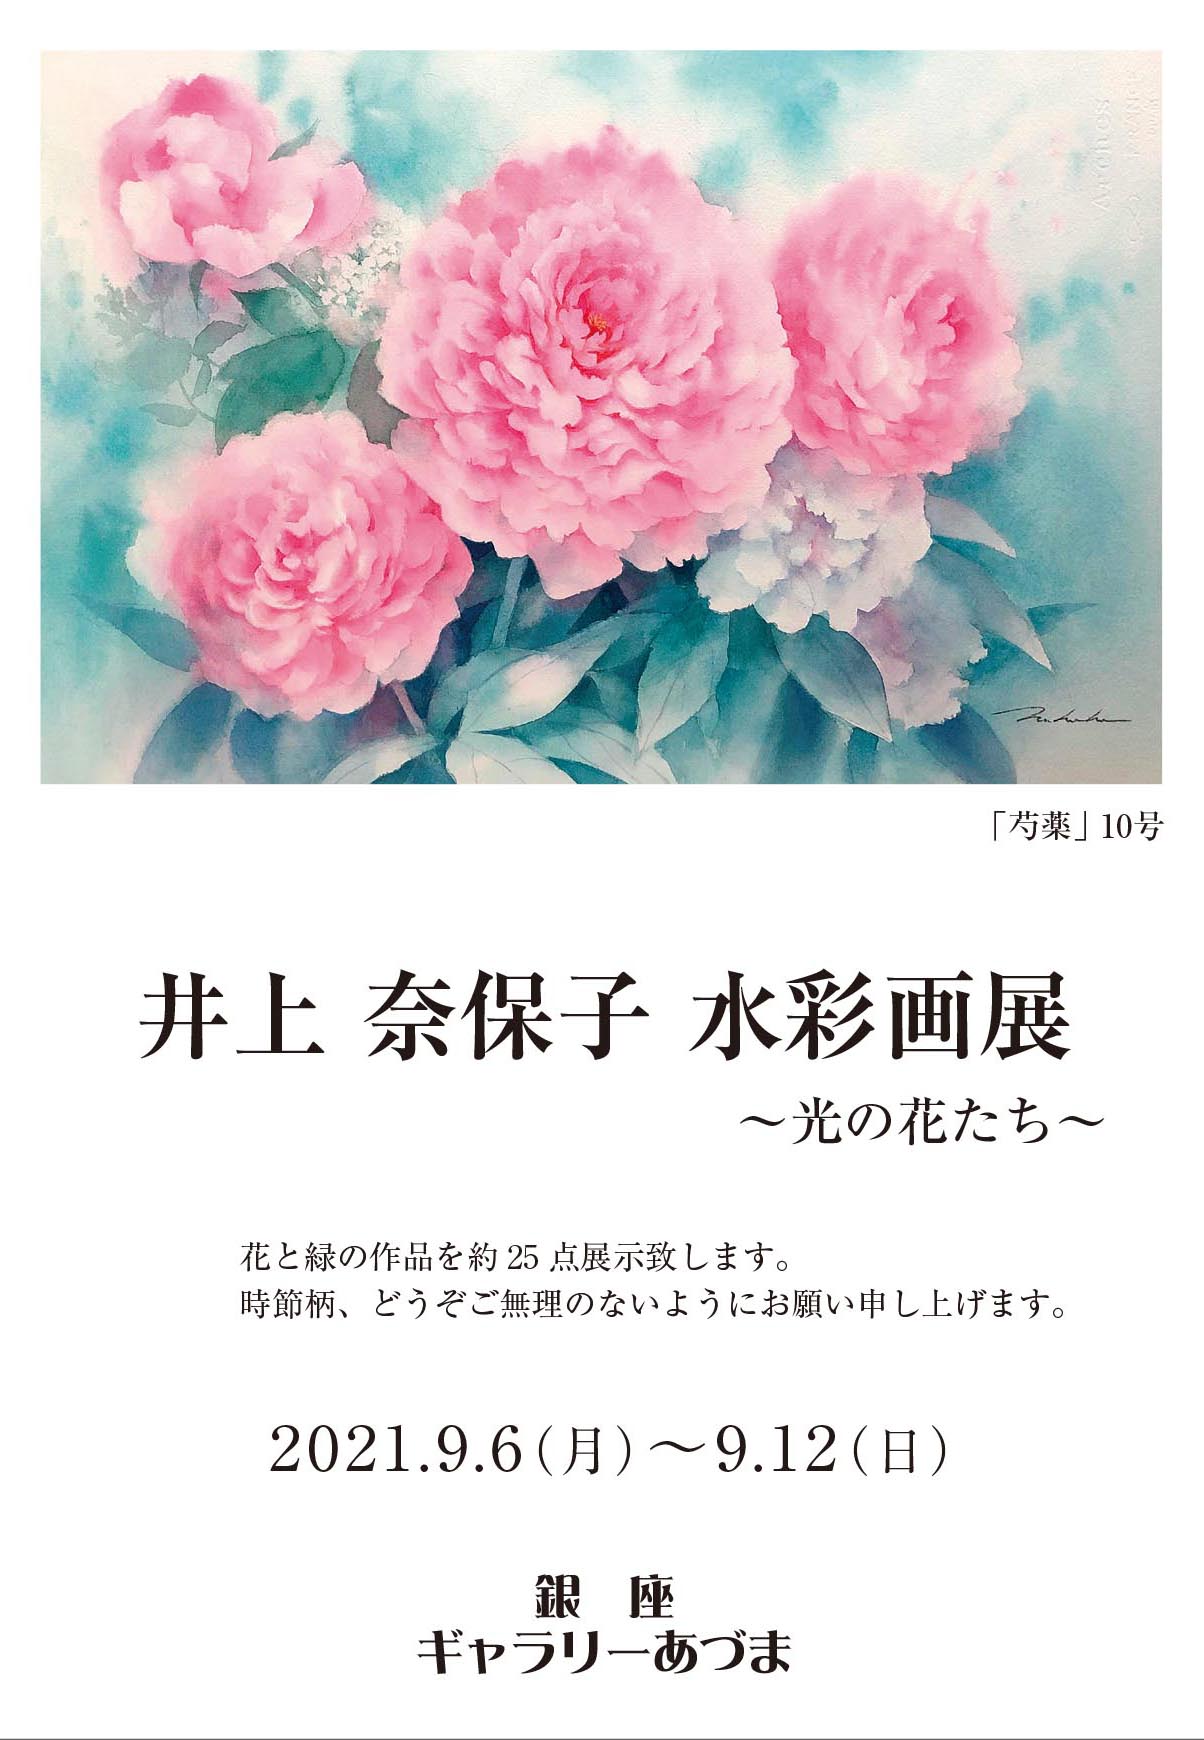 井上奈保子 水彩画展～光の花たち～ » アート・絵画の販売 (日本橋アート)